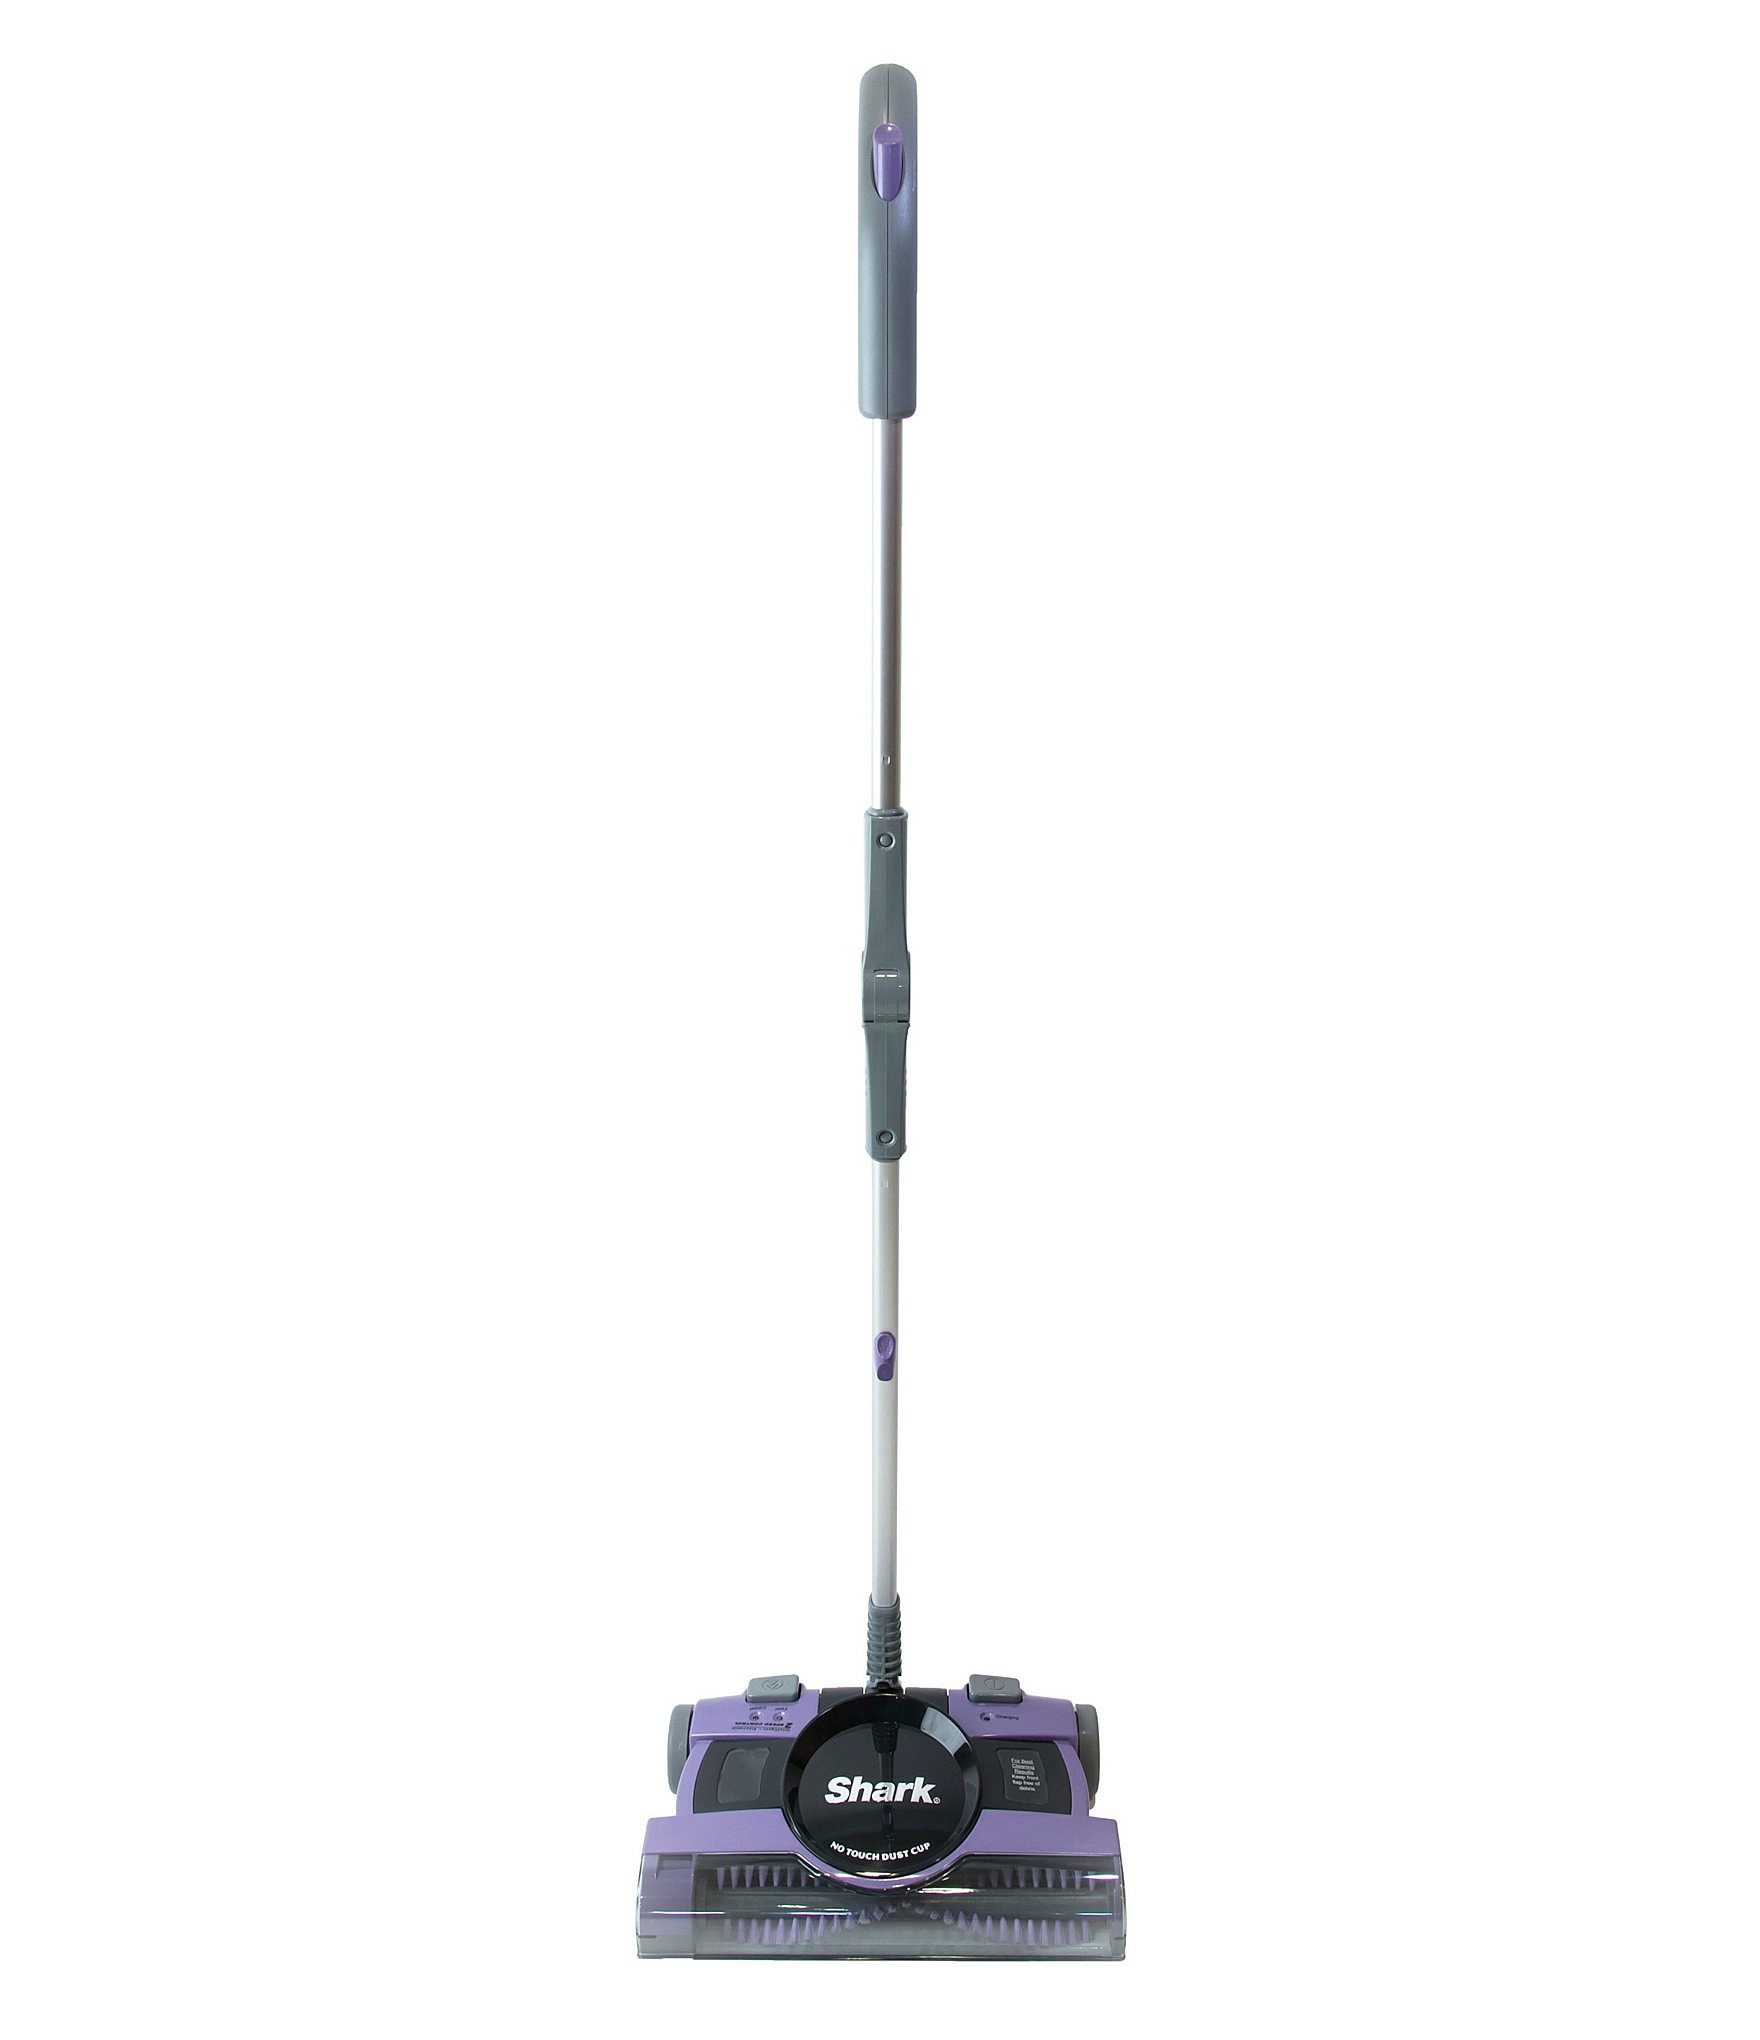 https://dimg.dillards.com/is/image/DillardsZoom/zoom/shark-13-in.-rechargeable-floor-and-carpet-sweeper/05419743_zi_purple.jpg